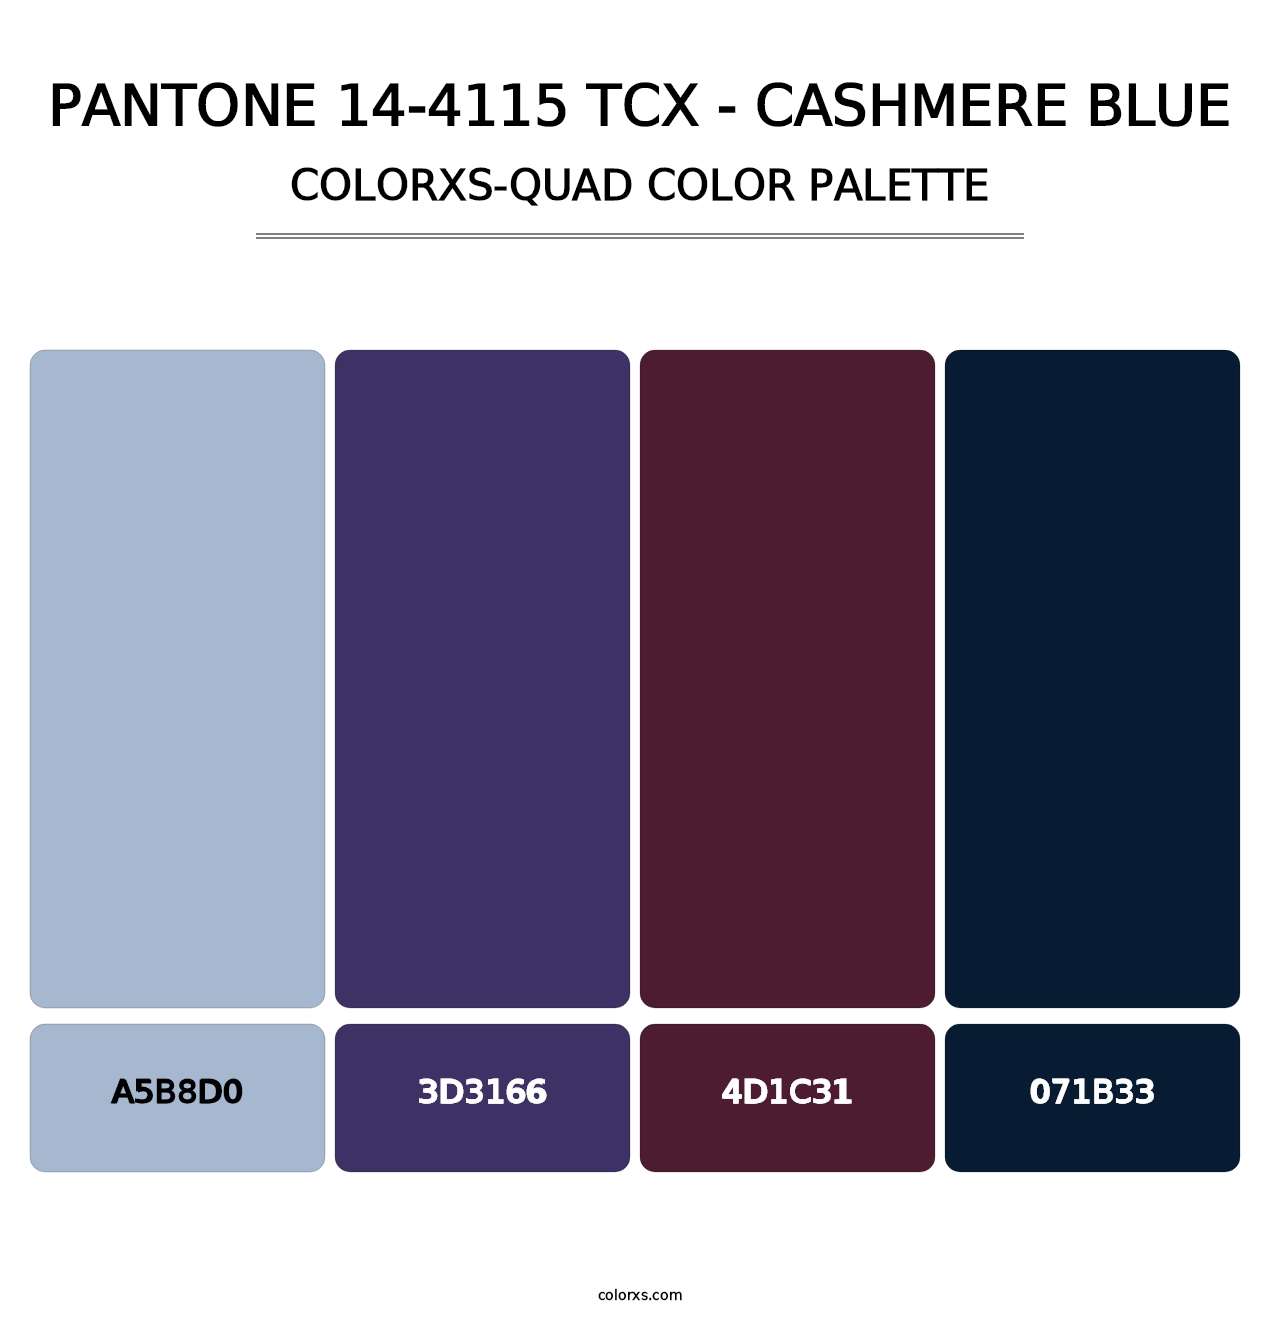 PANTONE 14-4115 TCX - Cashmere Blue - Colorxs Quad Palette